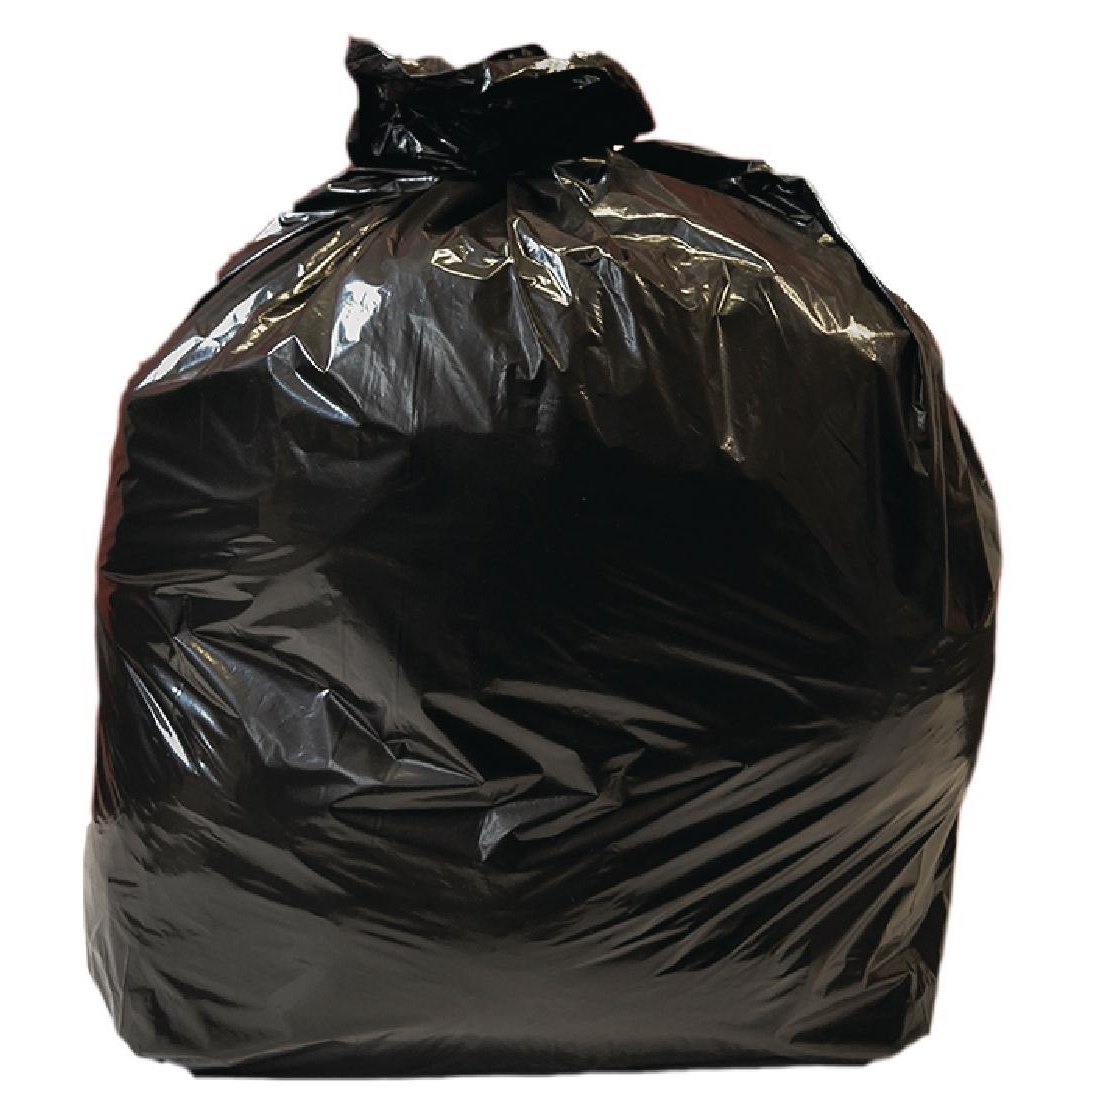 Купить черный мешок. Black Garbage Bags 240 ltr. Мусорный пакет. Черный мешок. Полиэтиленовые мешки черные.